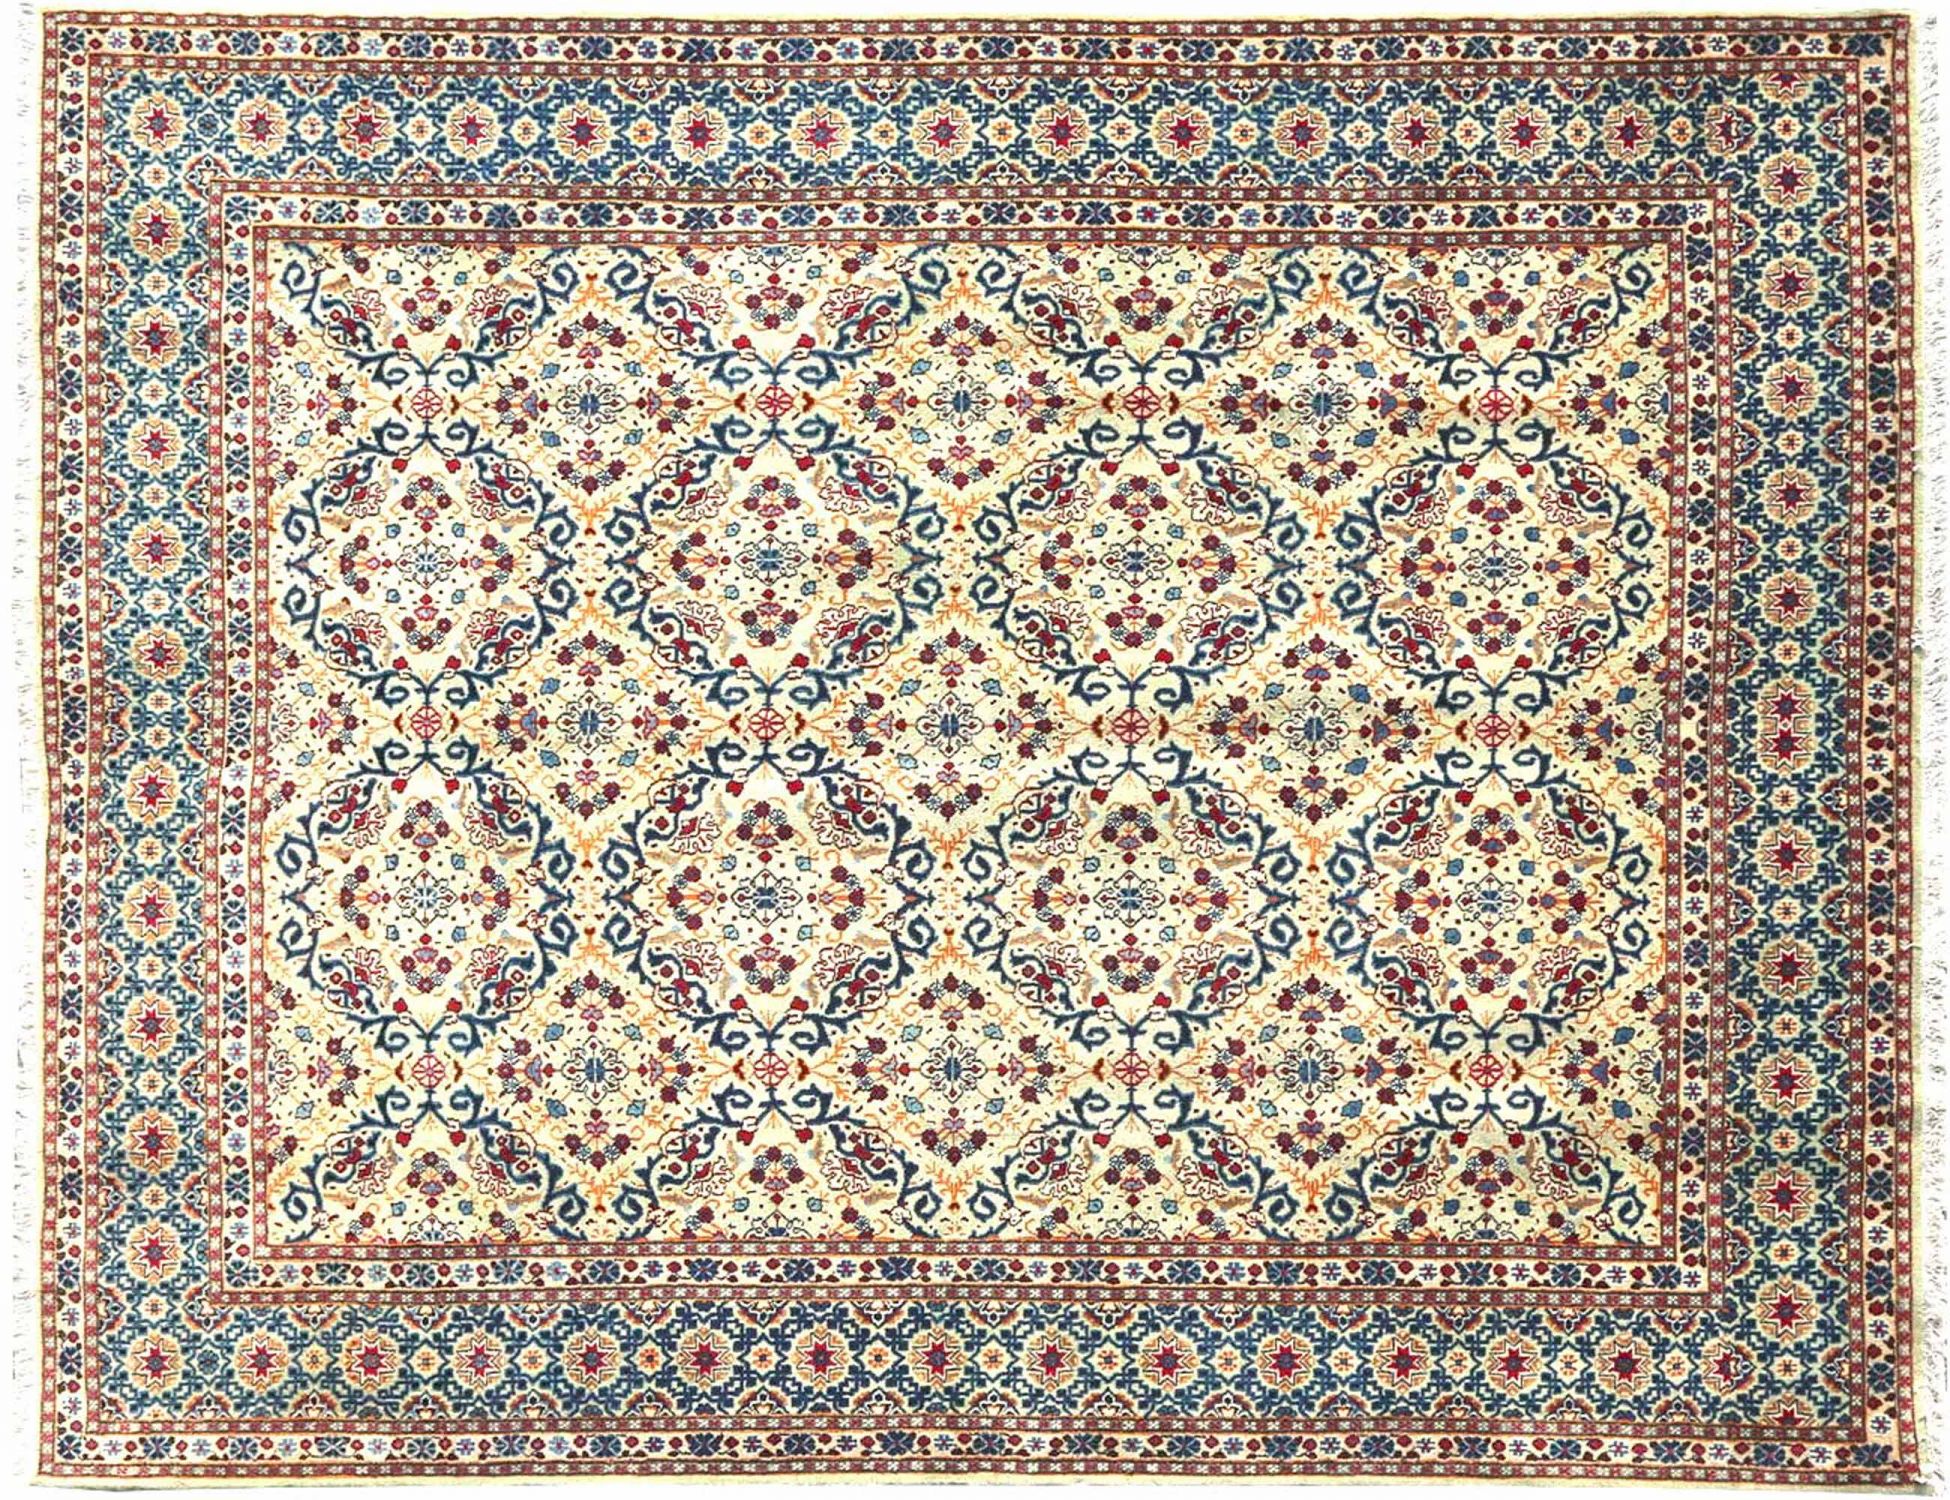  Περσικό Χαλί  Μπεζ <br/>305 x 210 cm